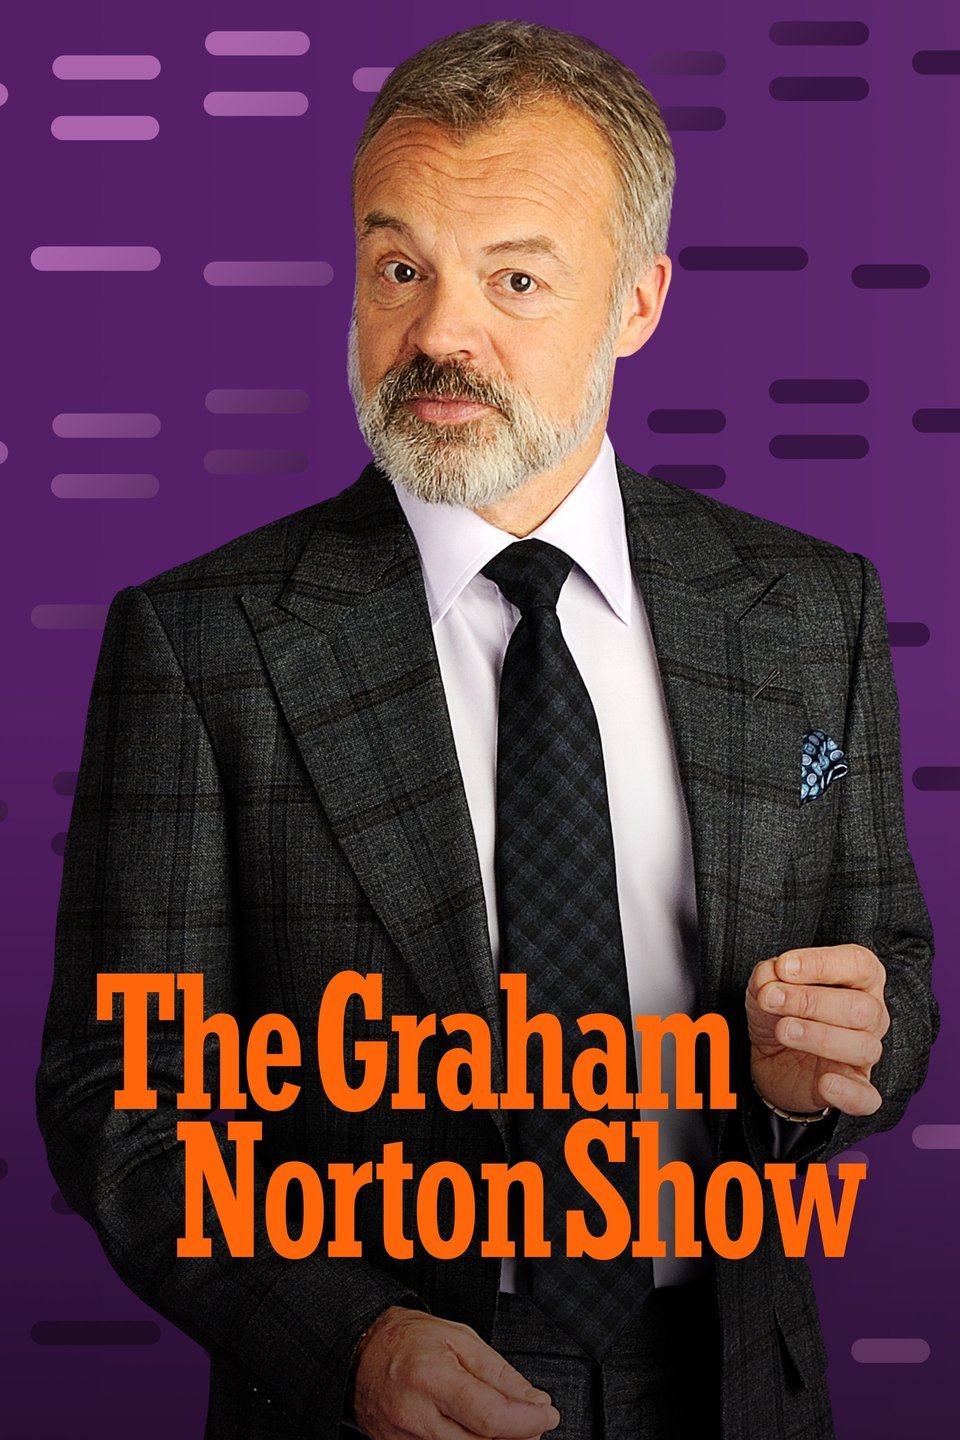 The Graham Norton Show S31E13 [1080p] (x265) 3ab1335c7aa2b6da48638de418014ccf